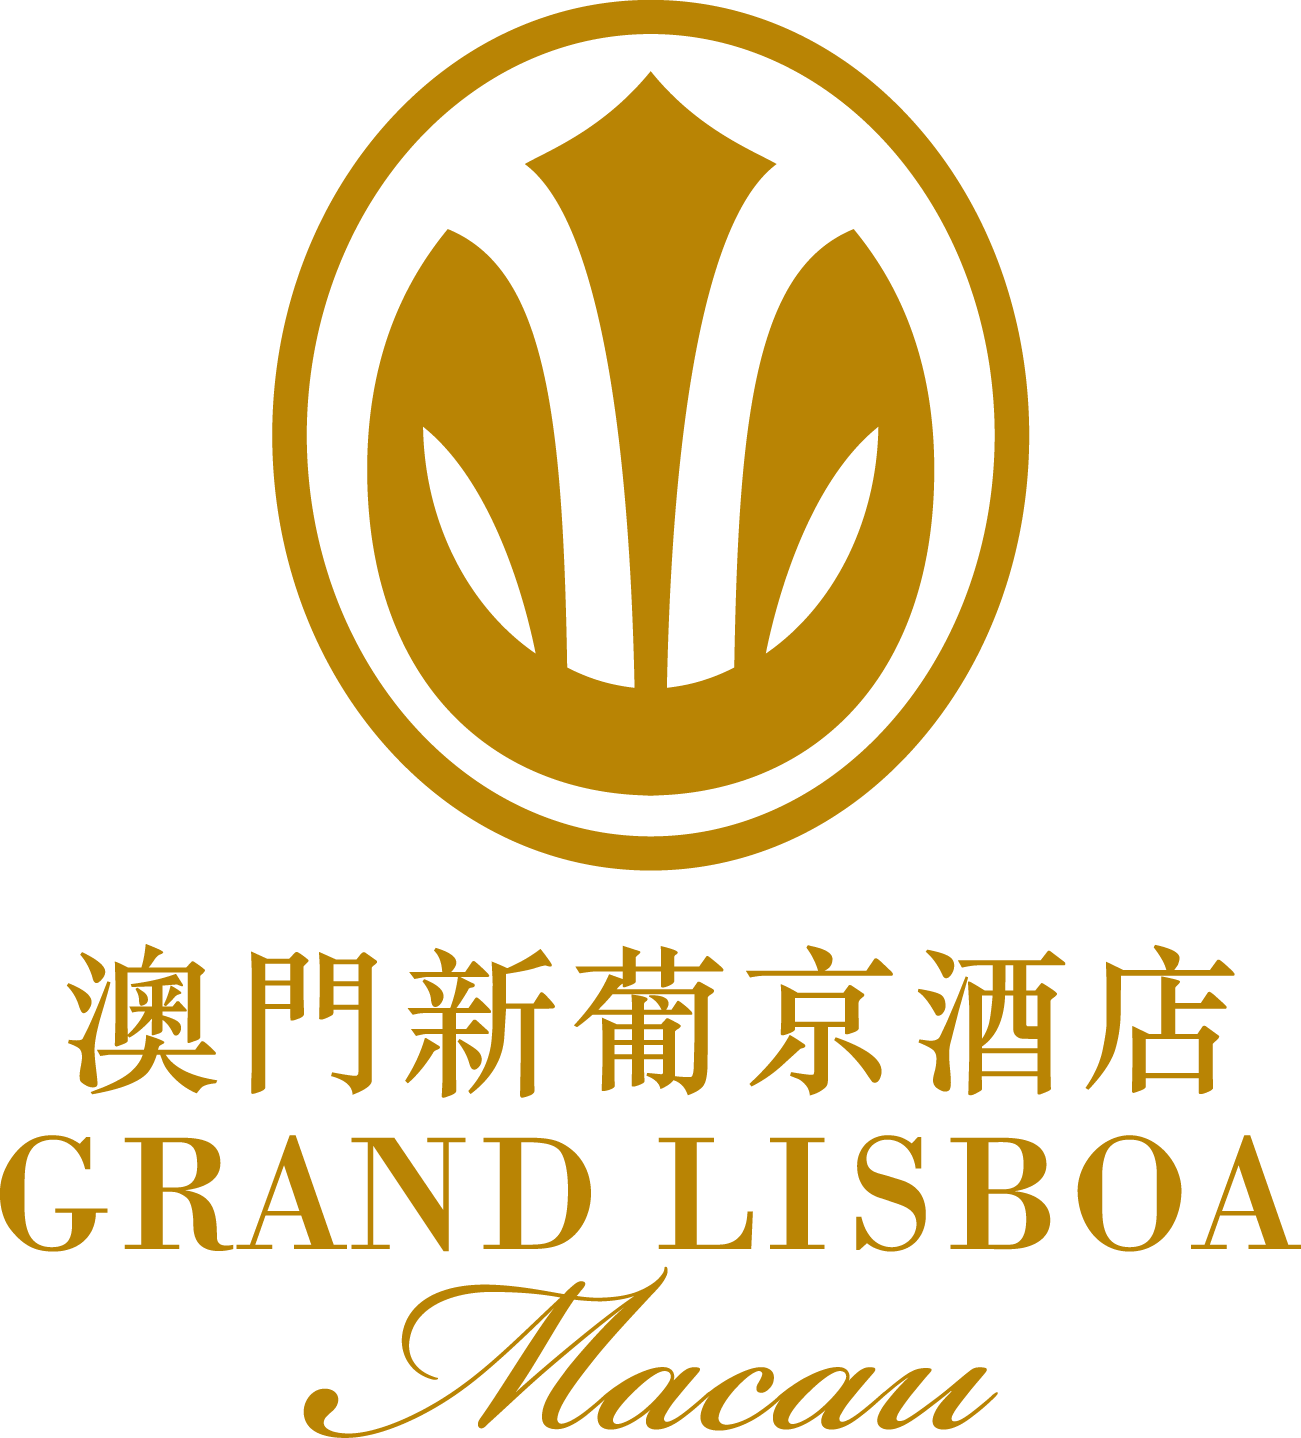 Grand Lisboa